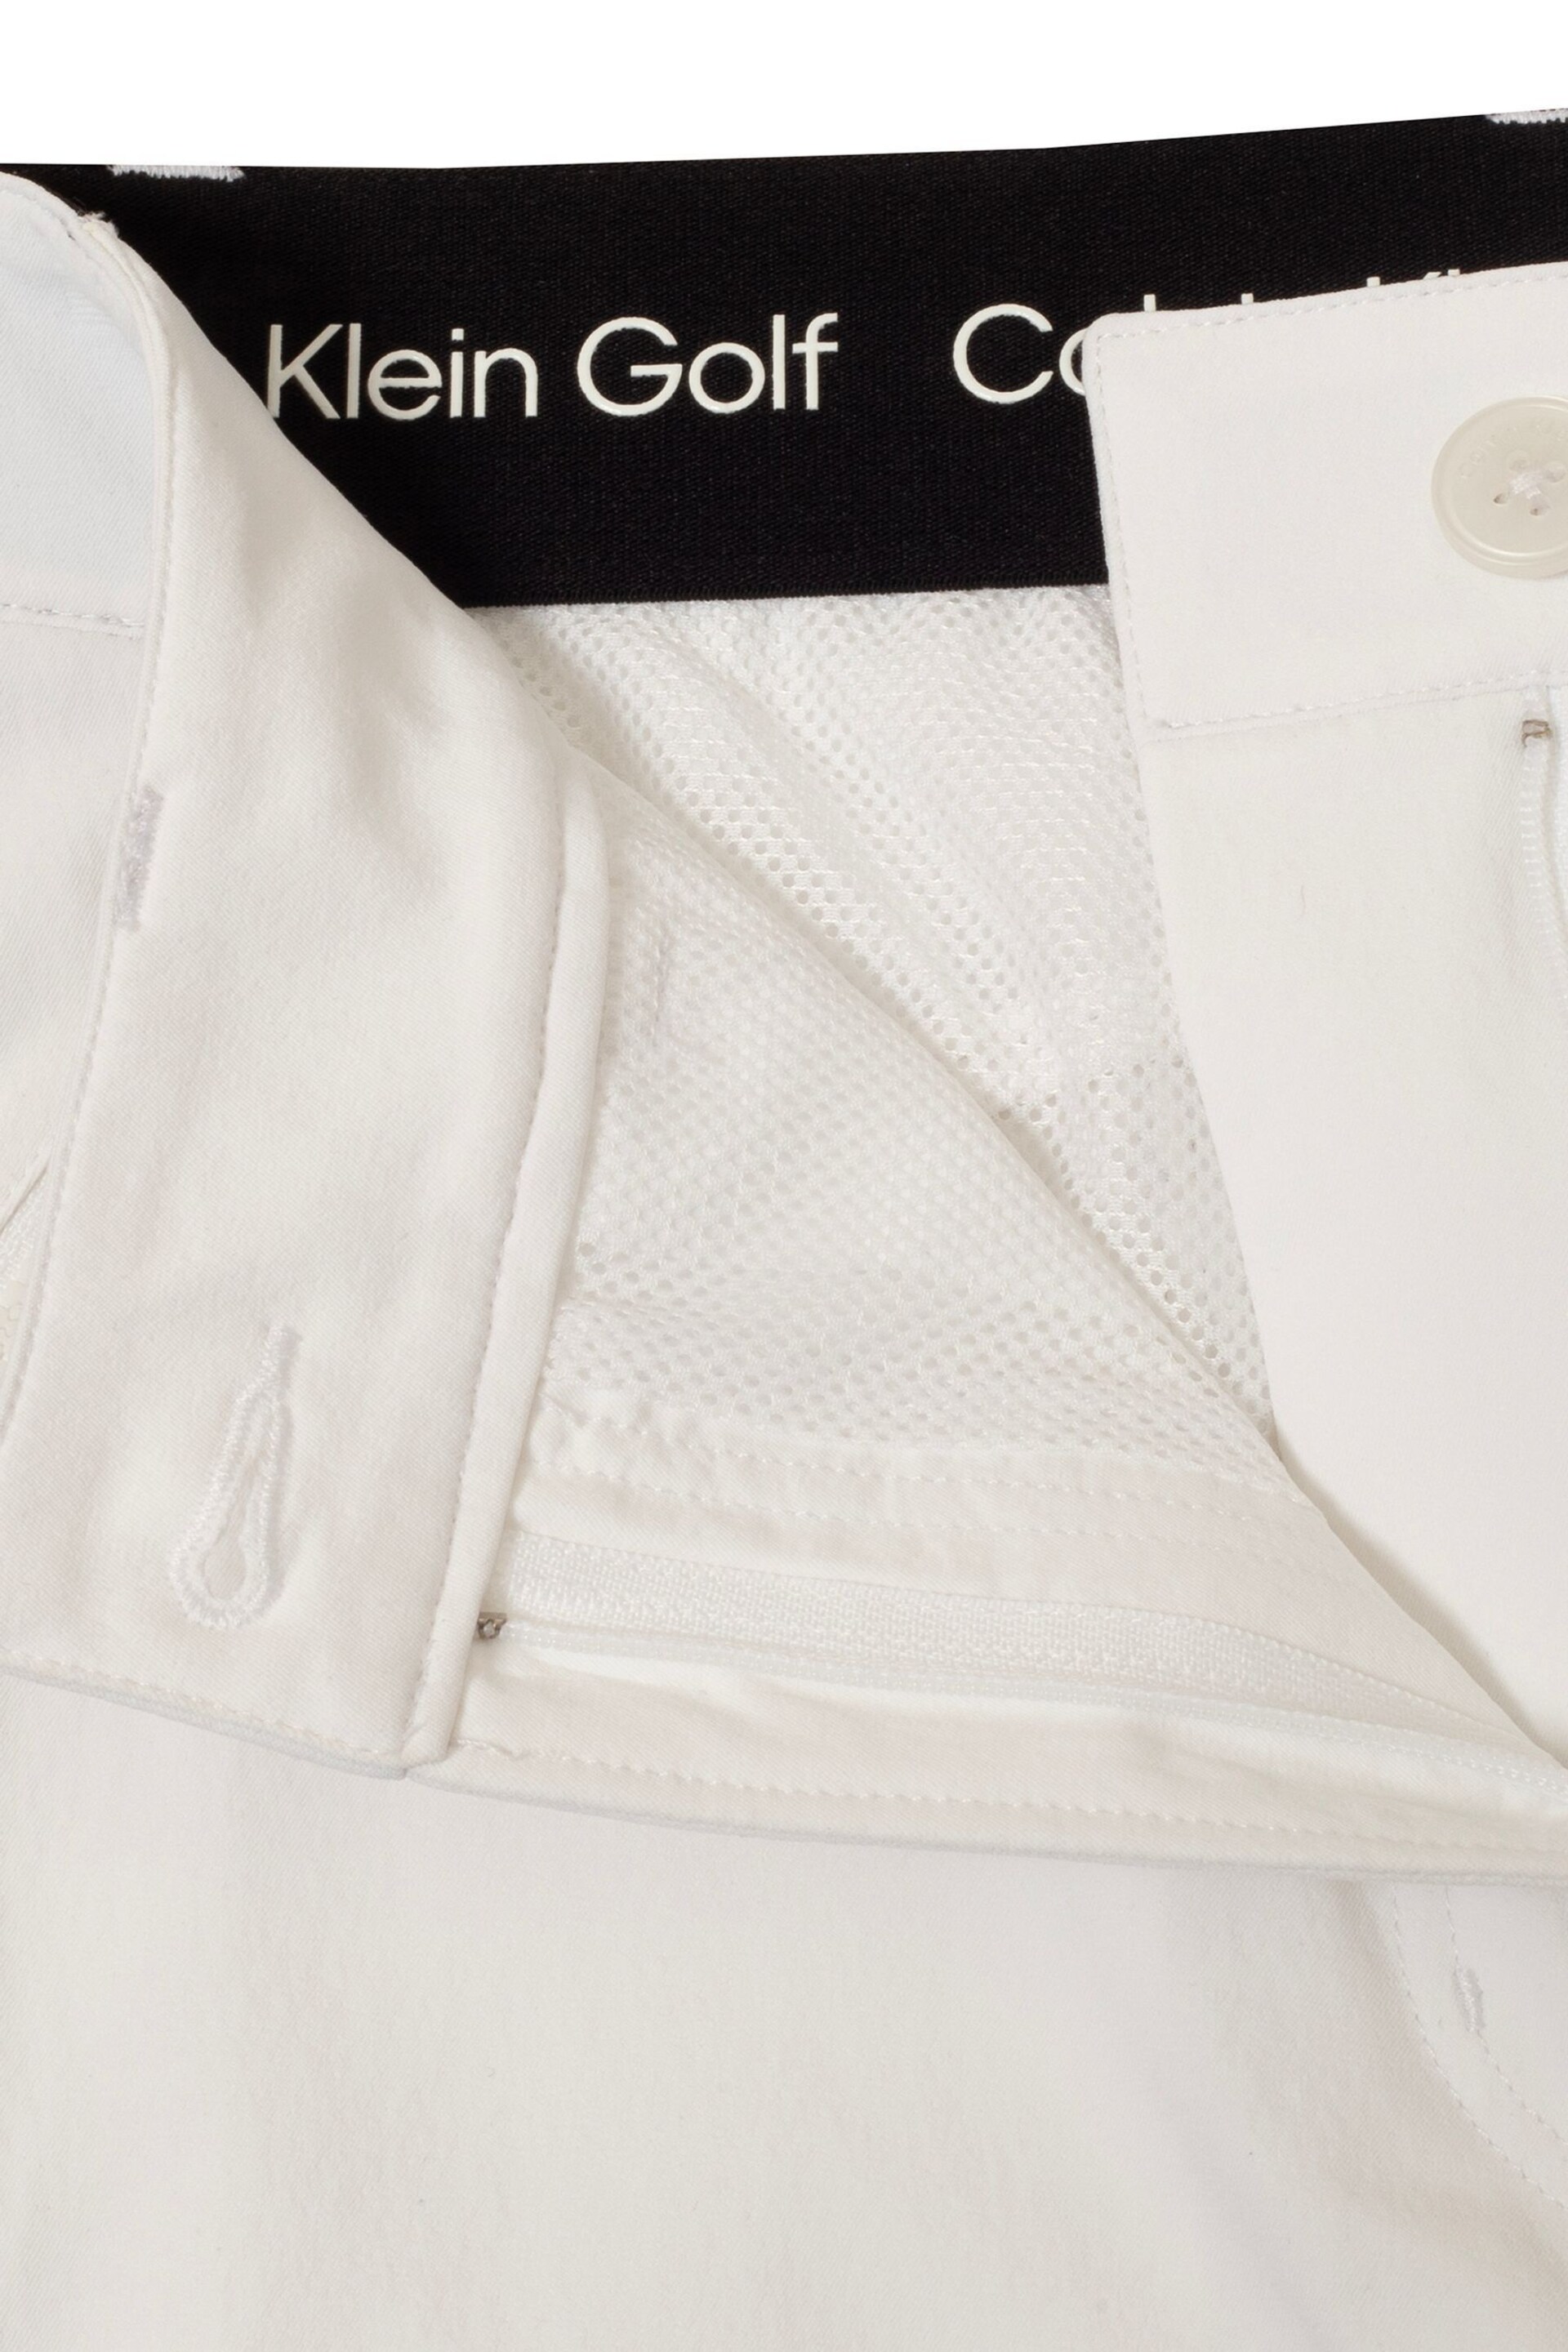 Calvin Klein Golf Rosepoint White Skort - Image 8 of 15